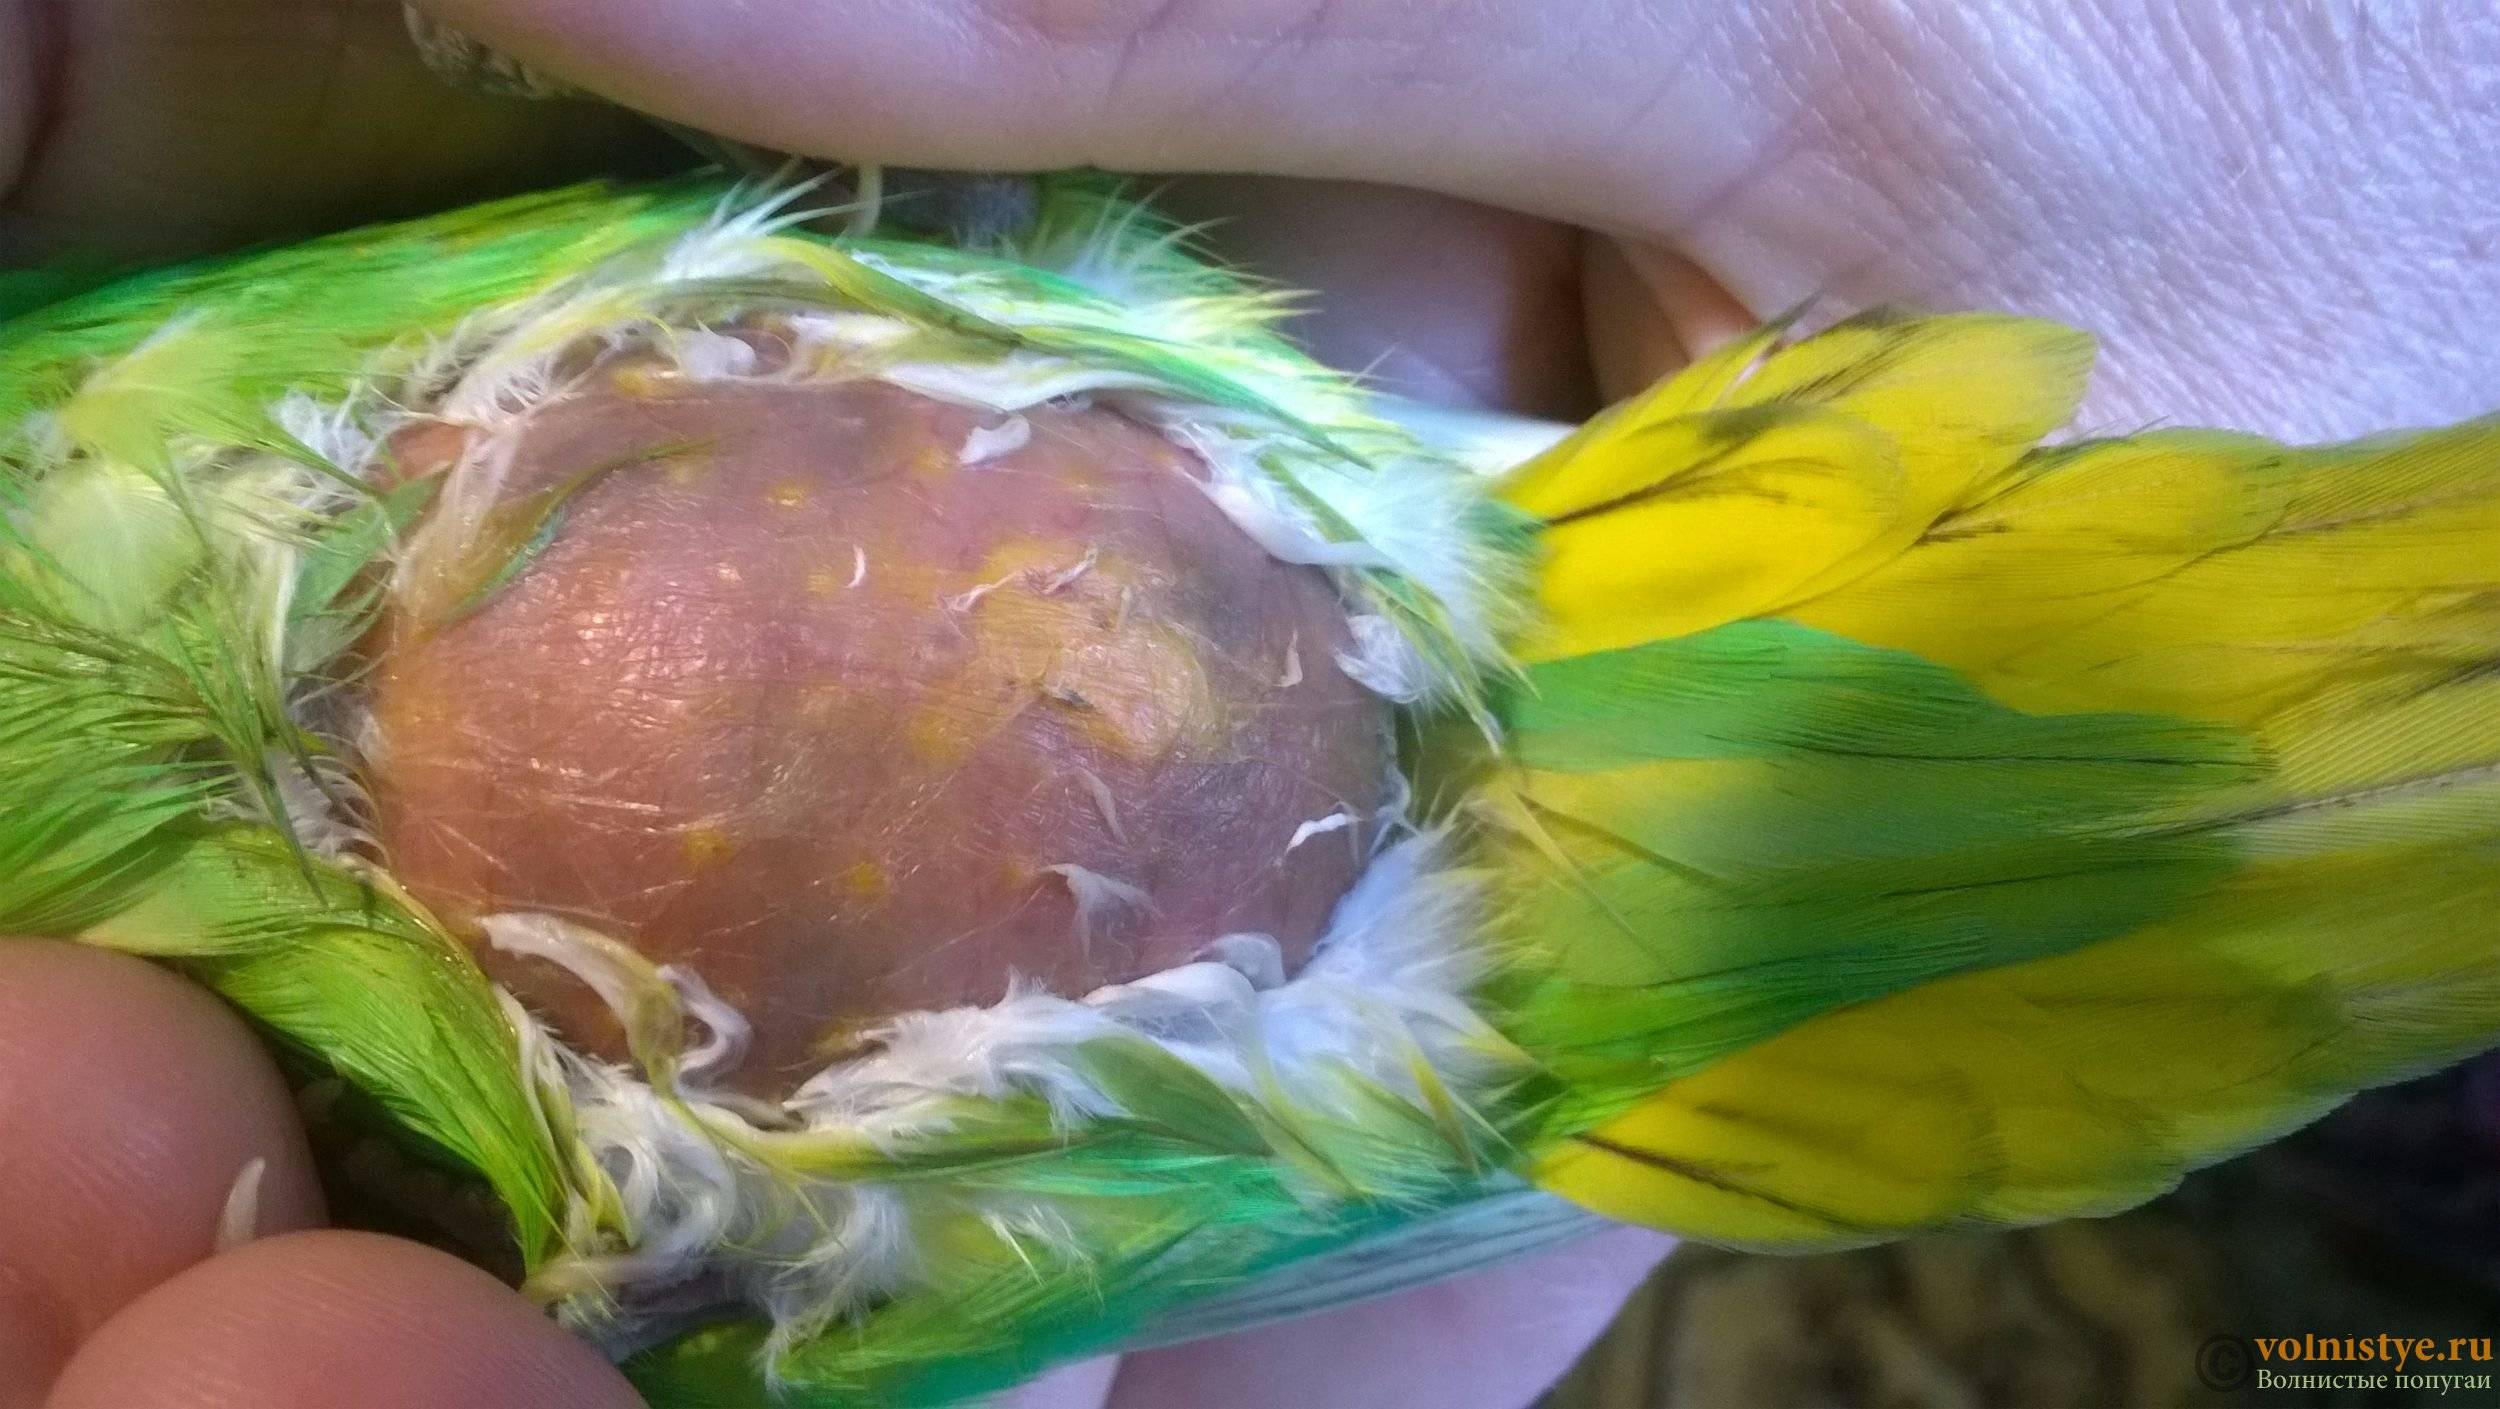 Липома у волнистого попугая, шишка или опухоль